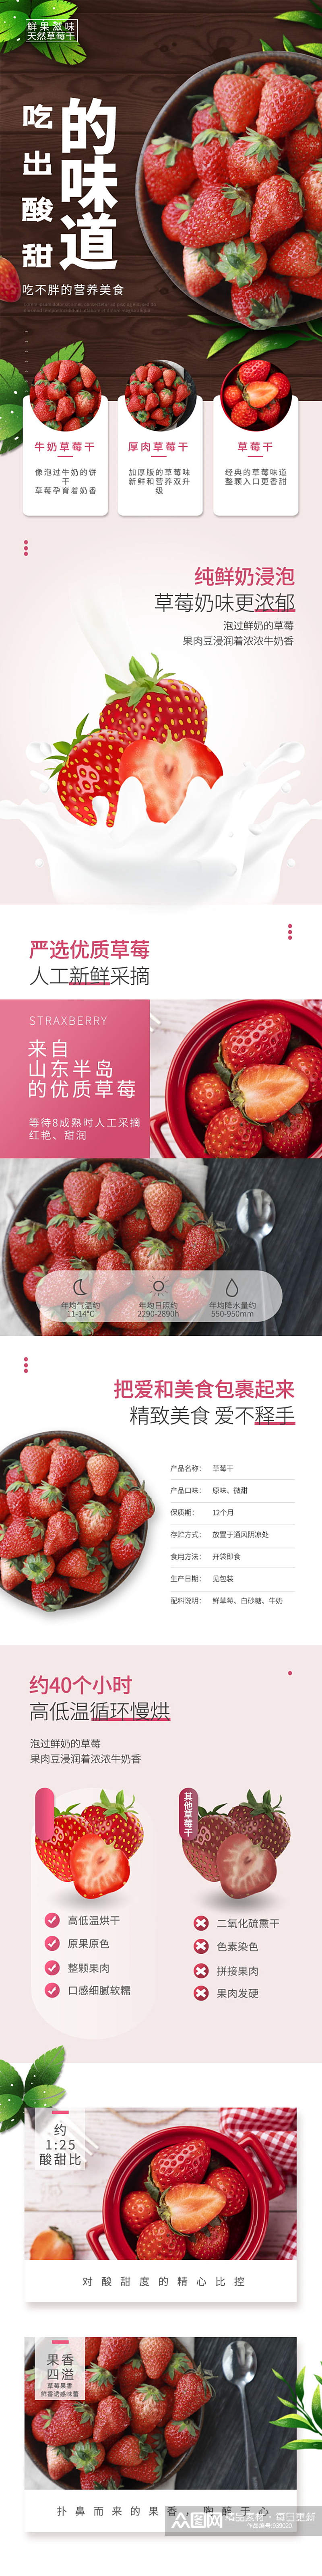 水果干草莓干食物零食电商详情页素材